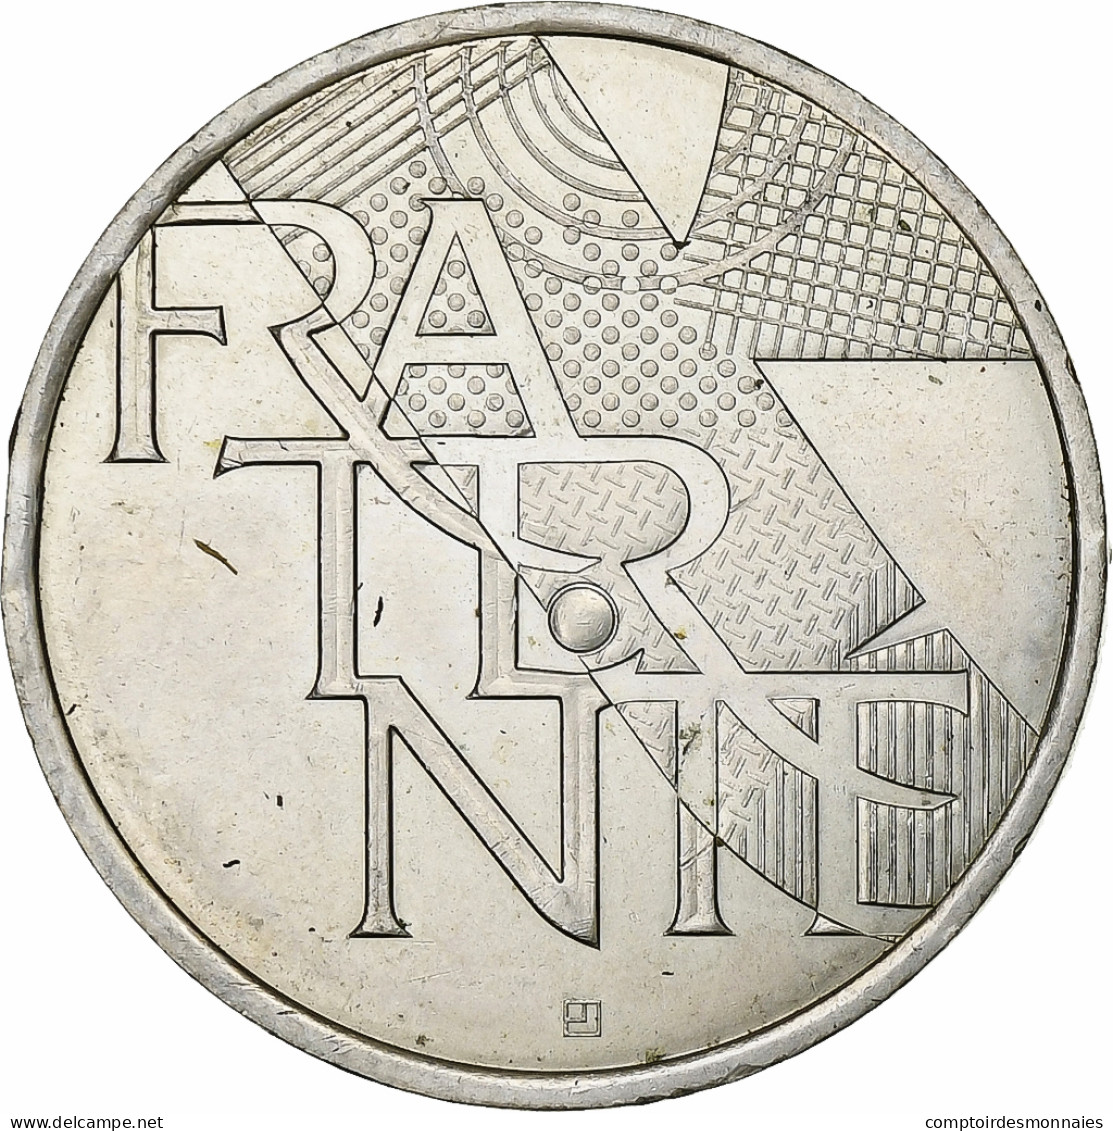 France, 5 Euros, Fraternité, 2013, Argent, SUP+, Gadoury:EU647 - France